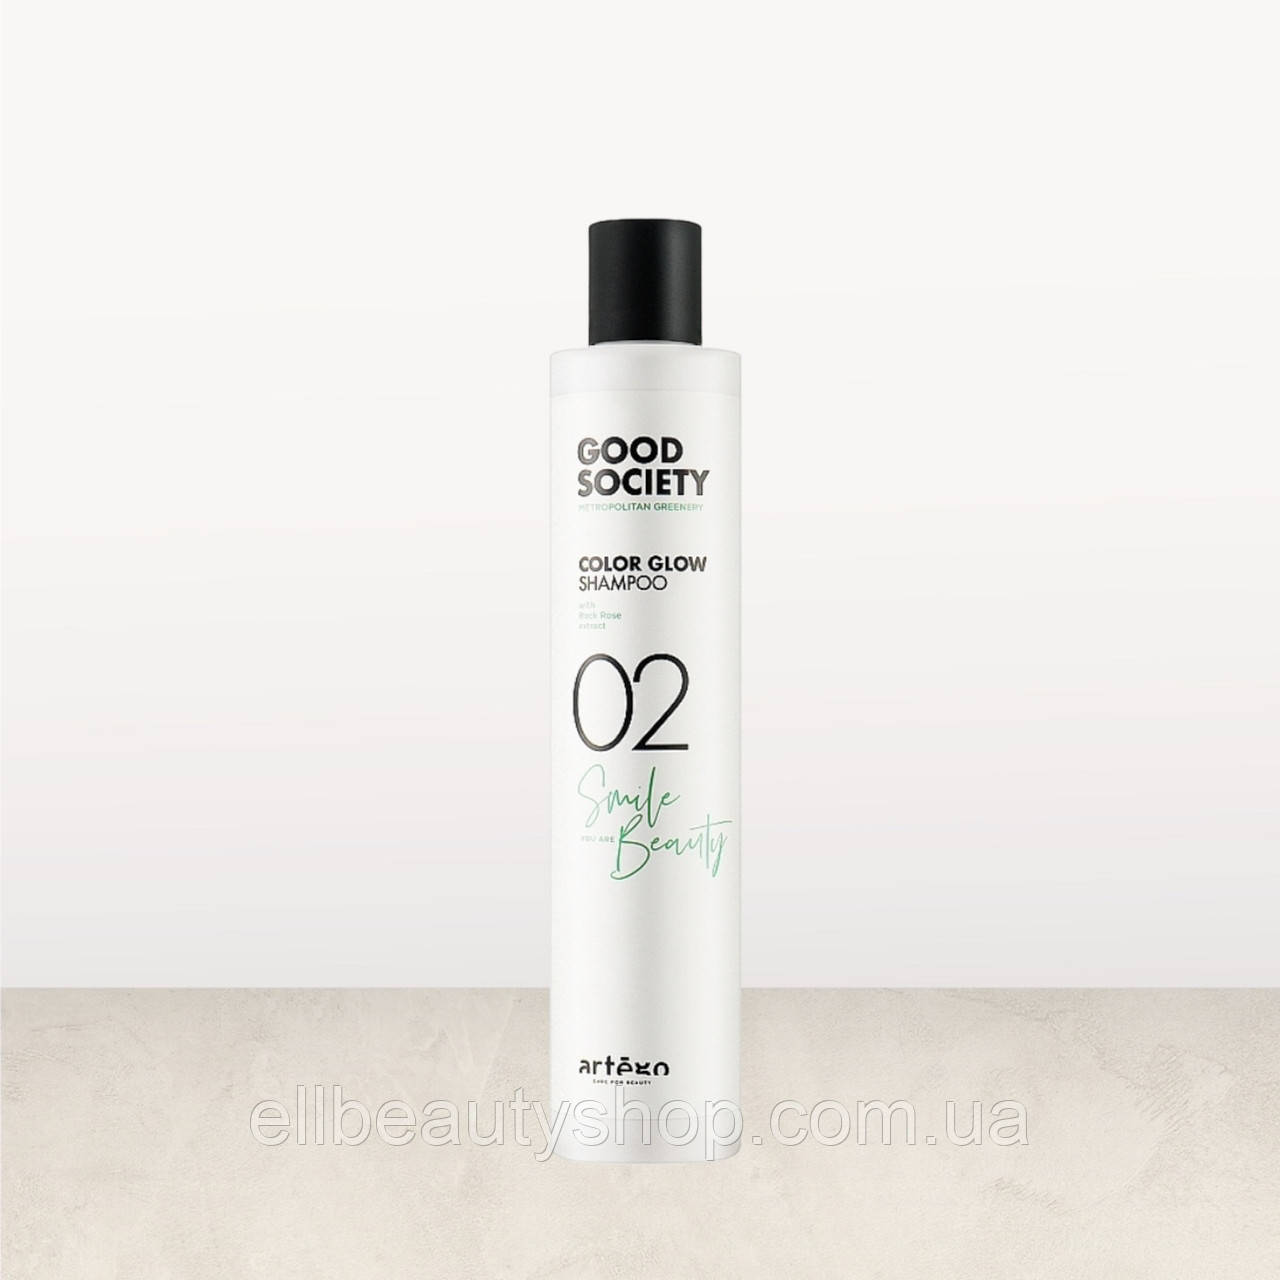 Шампунь для фарбованого волосся Artego Good Society Color Glow 02 Shampoo 250 мл